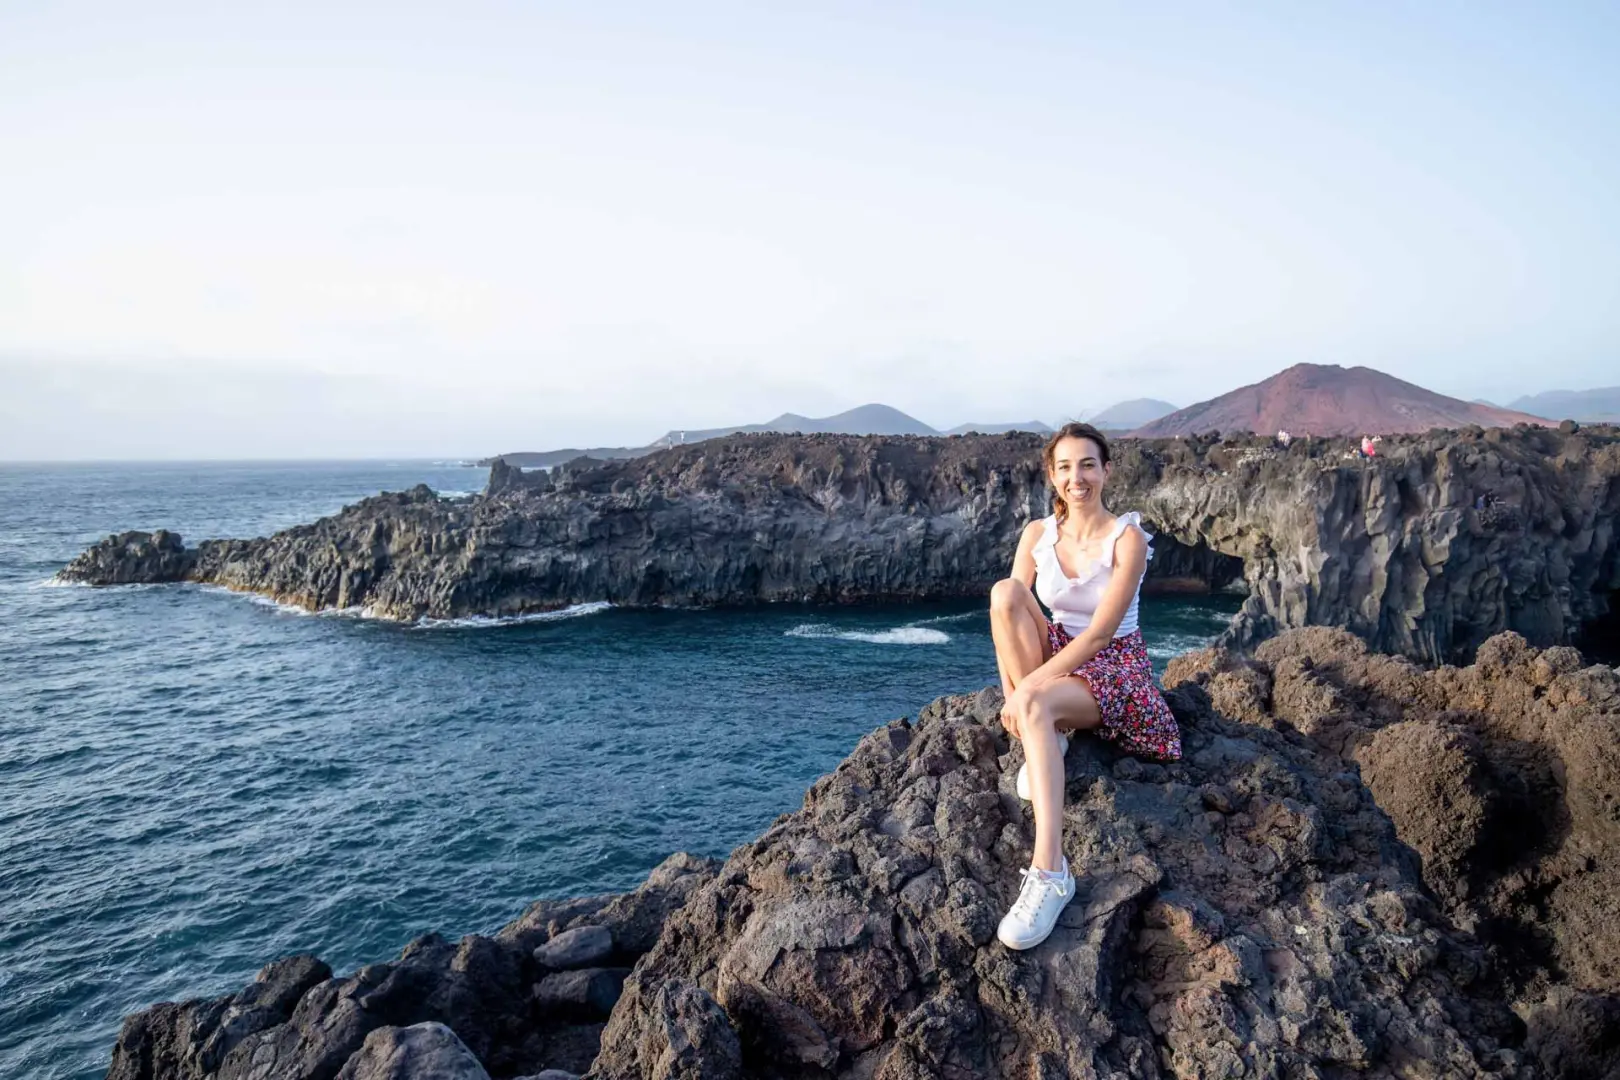 Actividades acuáticas, playas increíbles, no te pierdas la oportunidad de viajar en grupo a dos de las islas más destacadas de Canarias llenas de aventuras